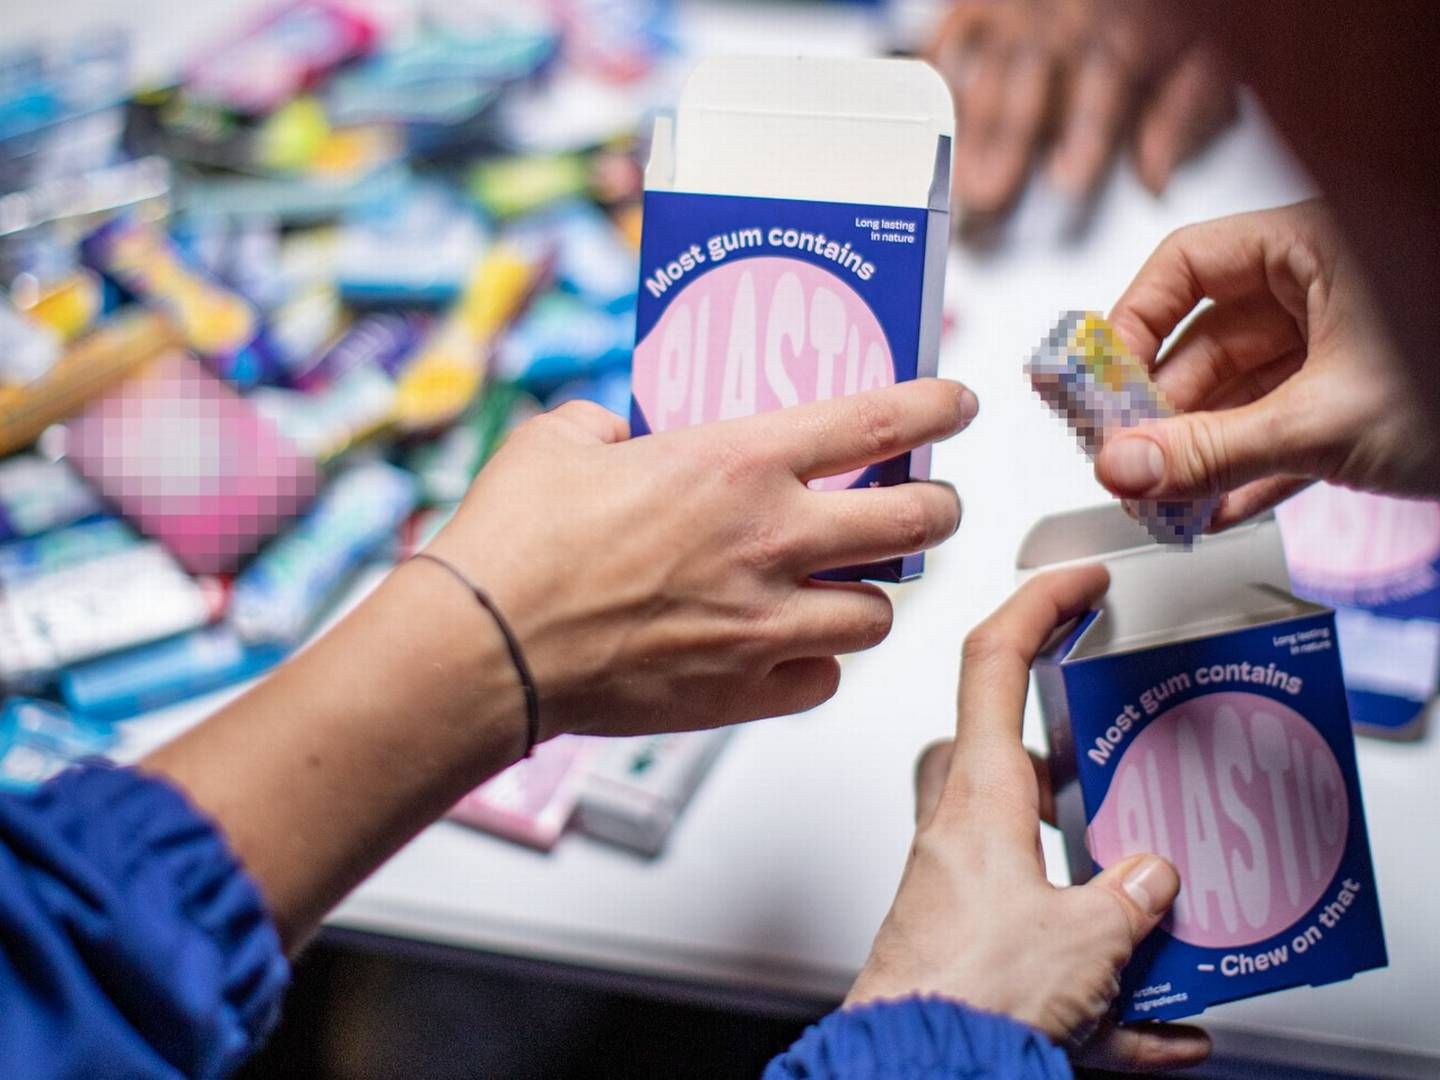 Tyggegummiselskabet Tru Gum får fremover en ny kategori at tilbyde kunderne efter overtagelse. | Foto: Pr / True Gum